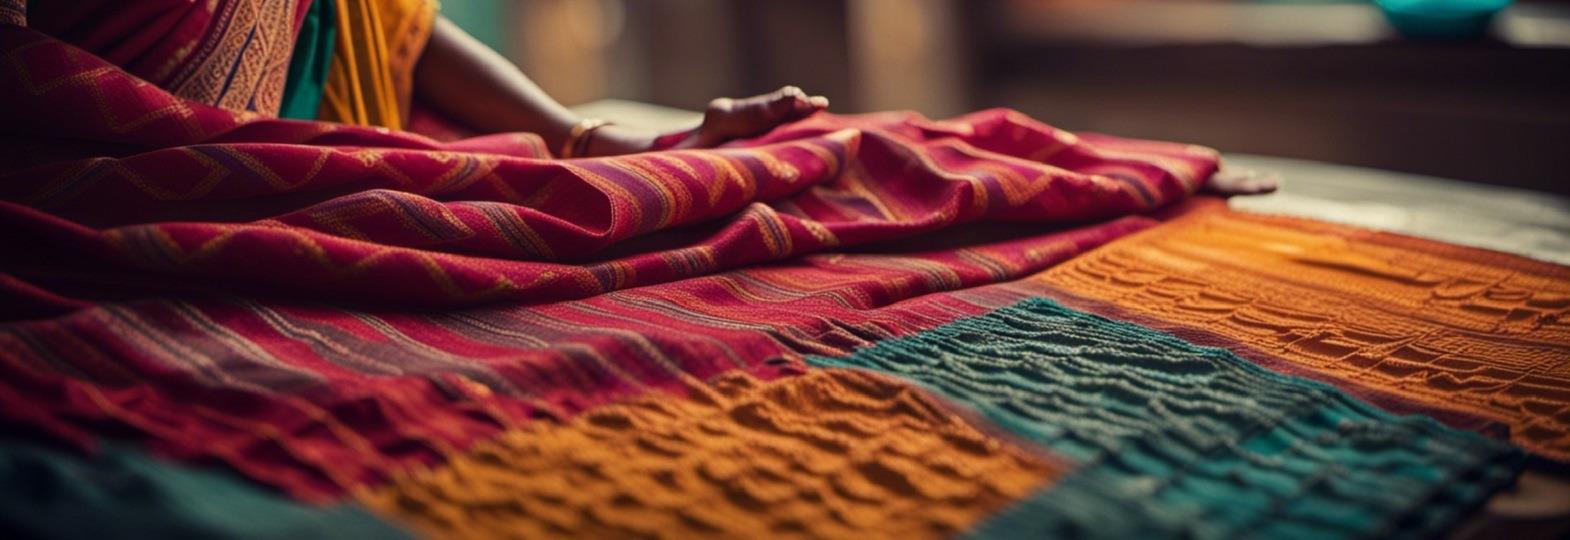 big_Handloom saree weaving india